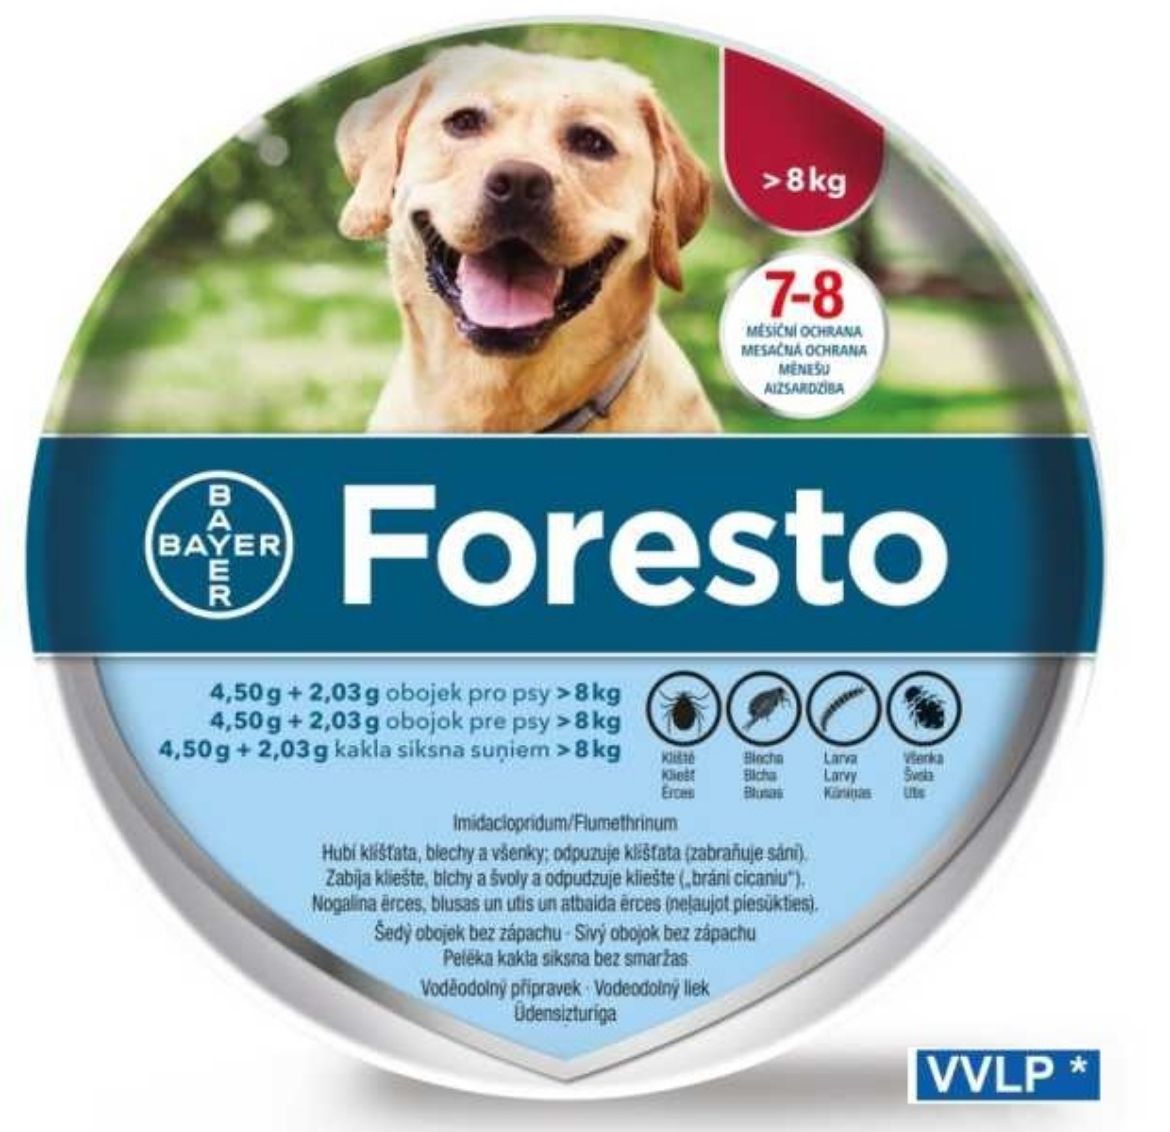 Obrázek z Foresto obojek pro psy nad 8 kg 4,50 + 2,03 g 